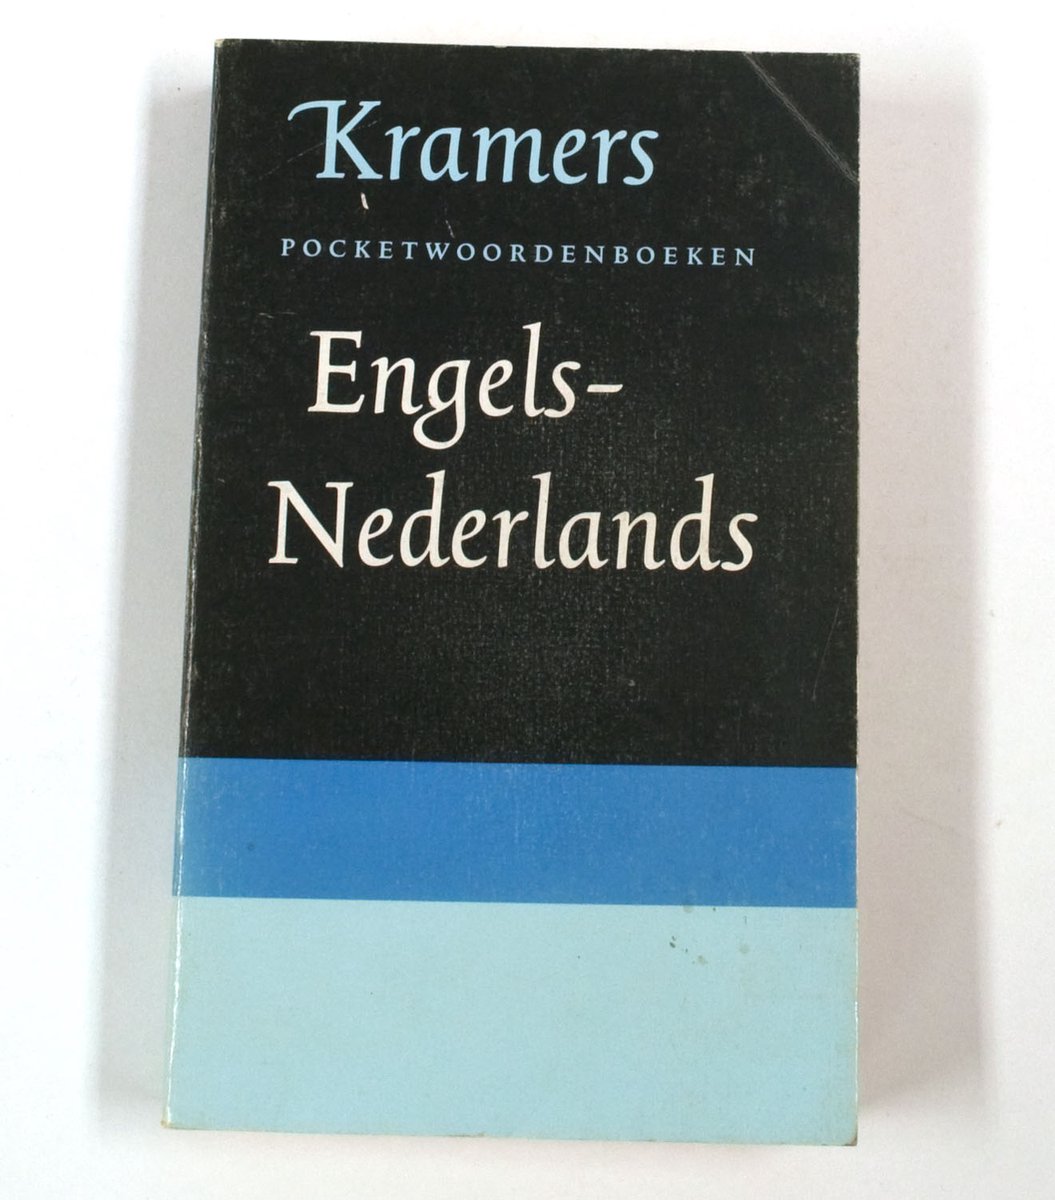 Kramers pocketwoordenboek engels-nederlands